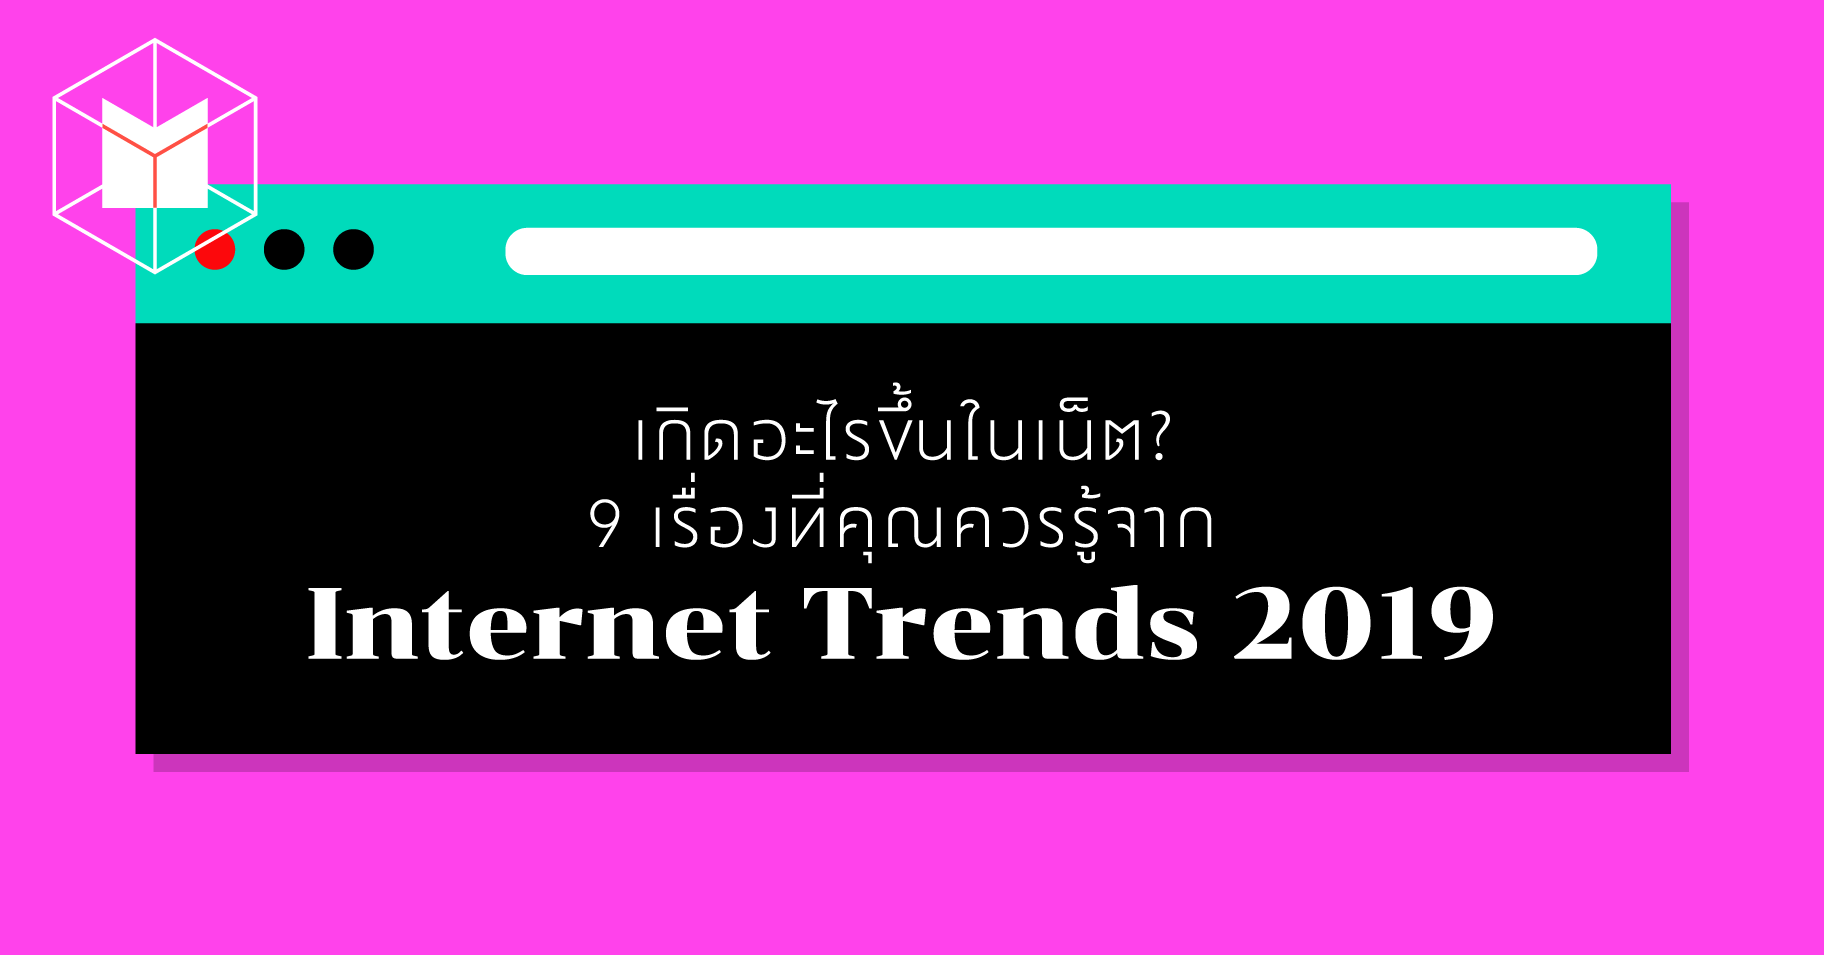 เกิดอะไรขึ้นในเน็ต? 9 เรื่องที่คุณควรรู้จาก Internet Trends 2019